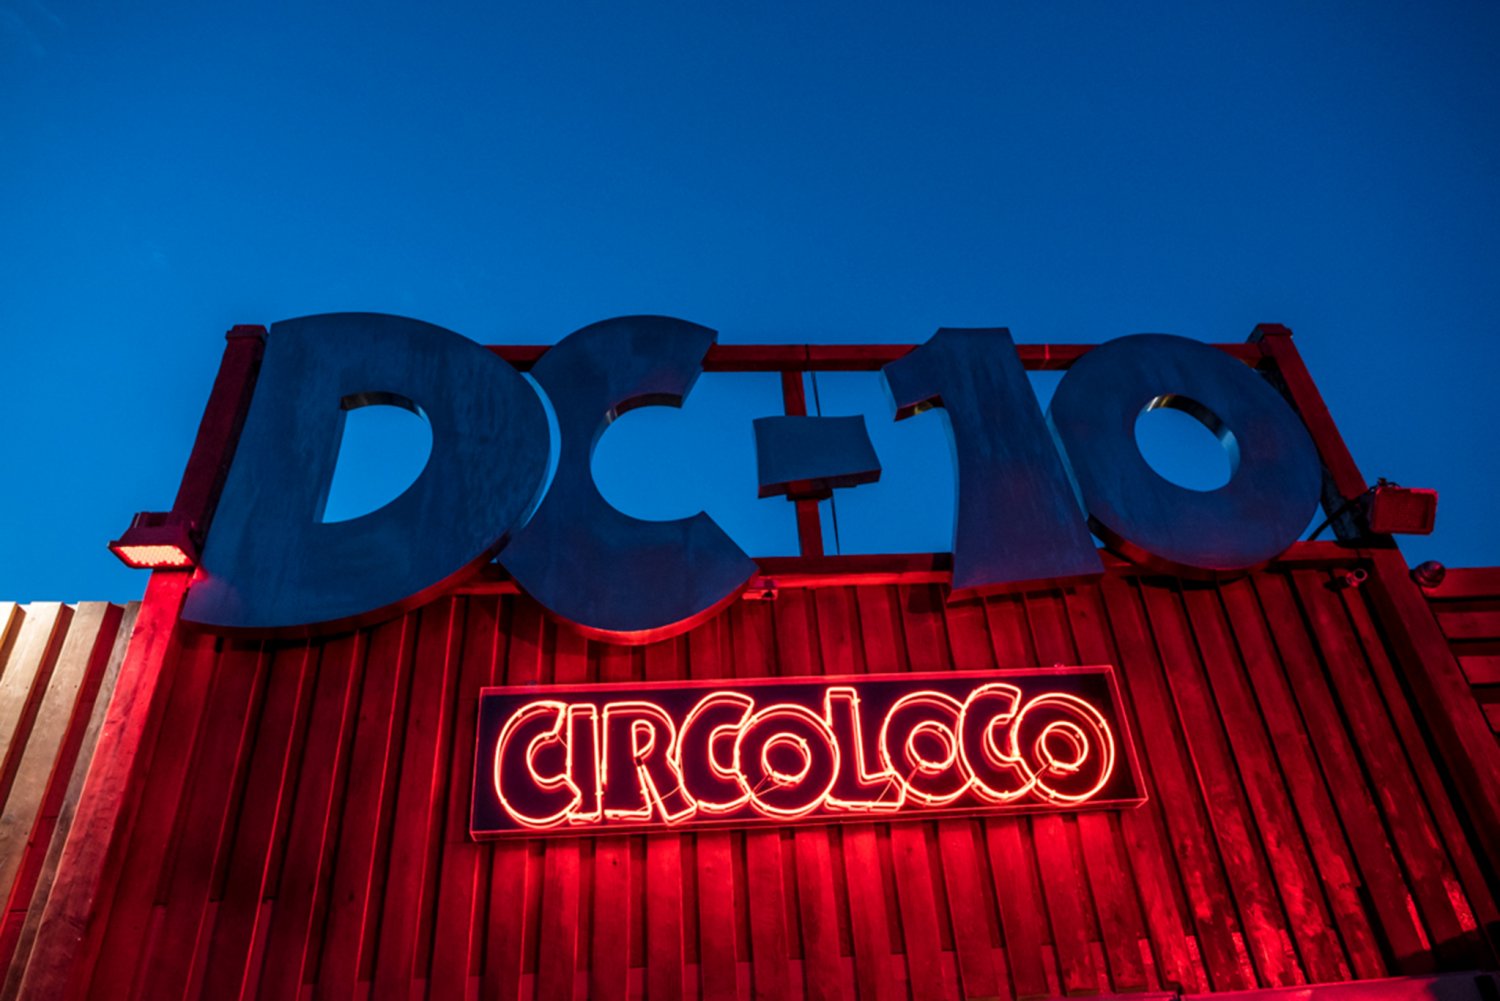 Circoloco Ibiza club dc-10 techno